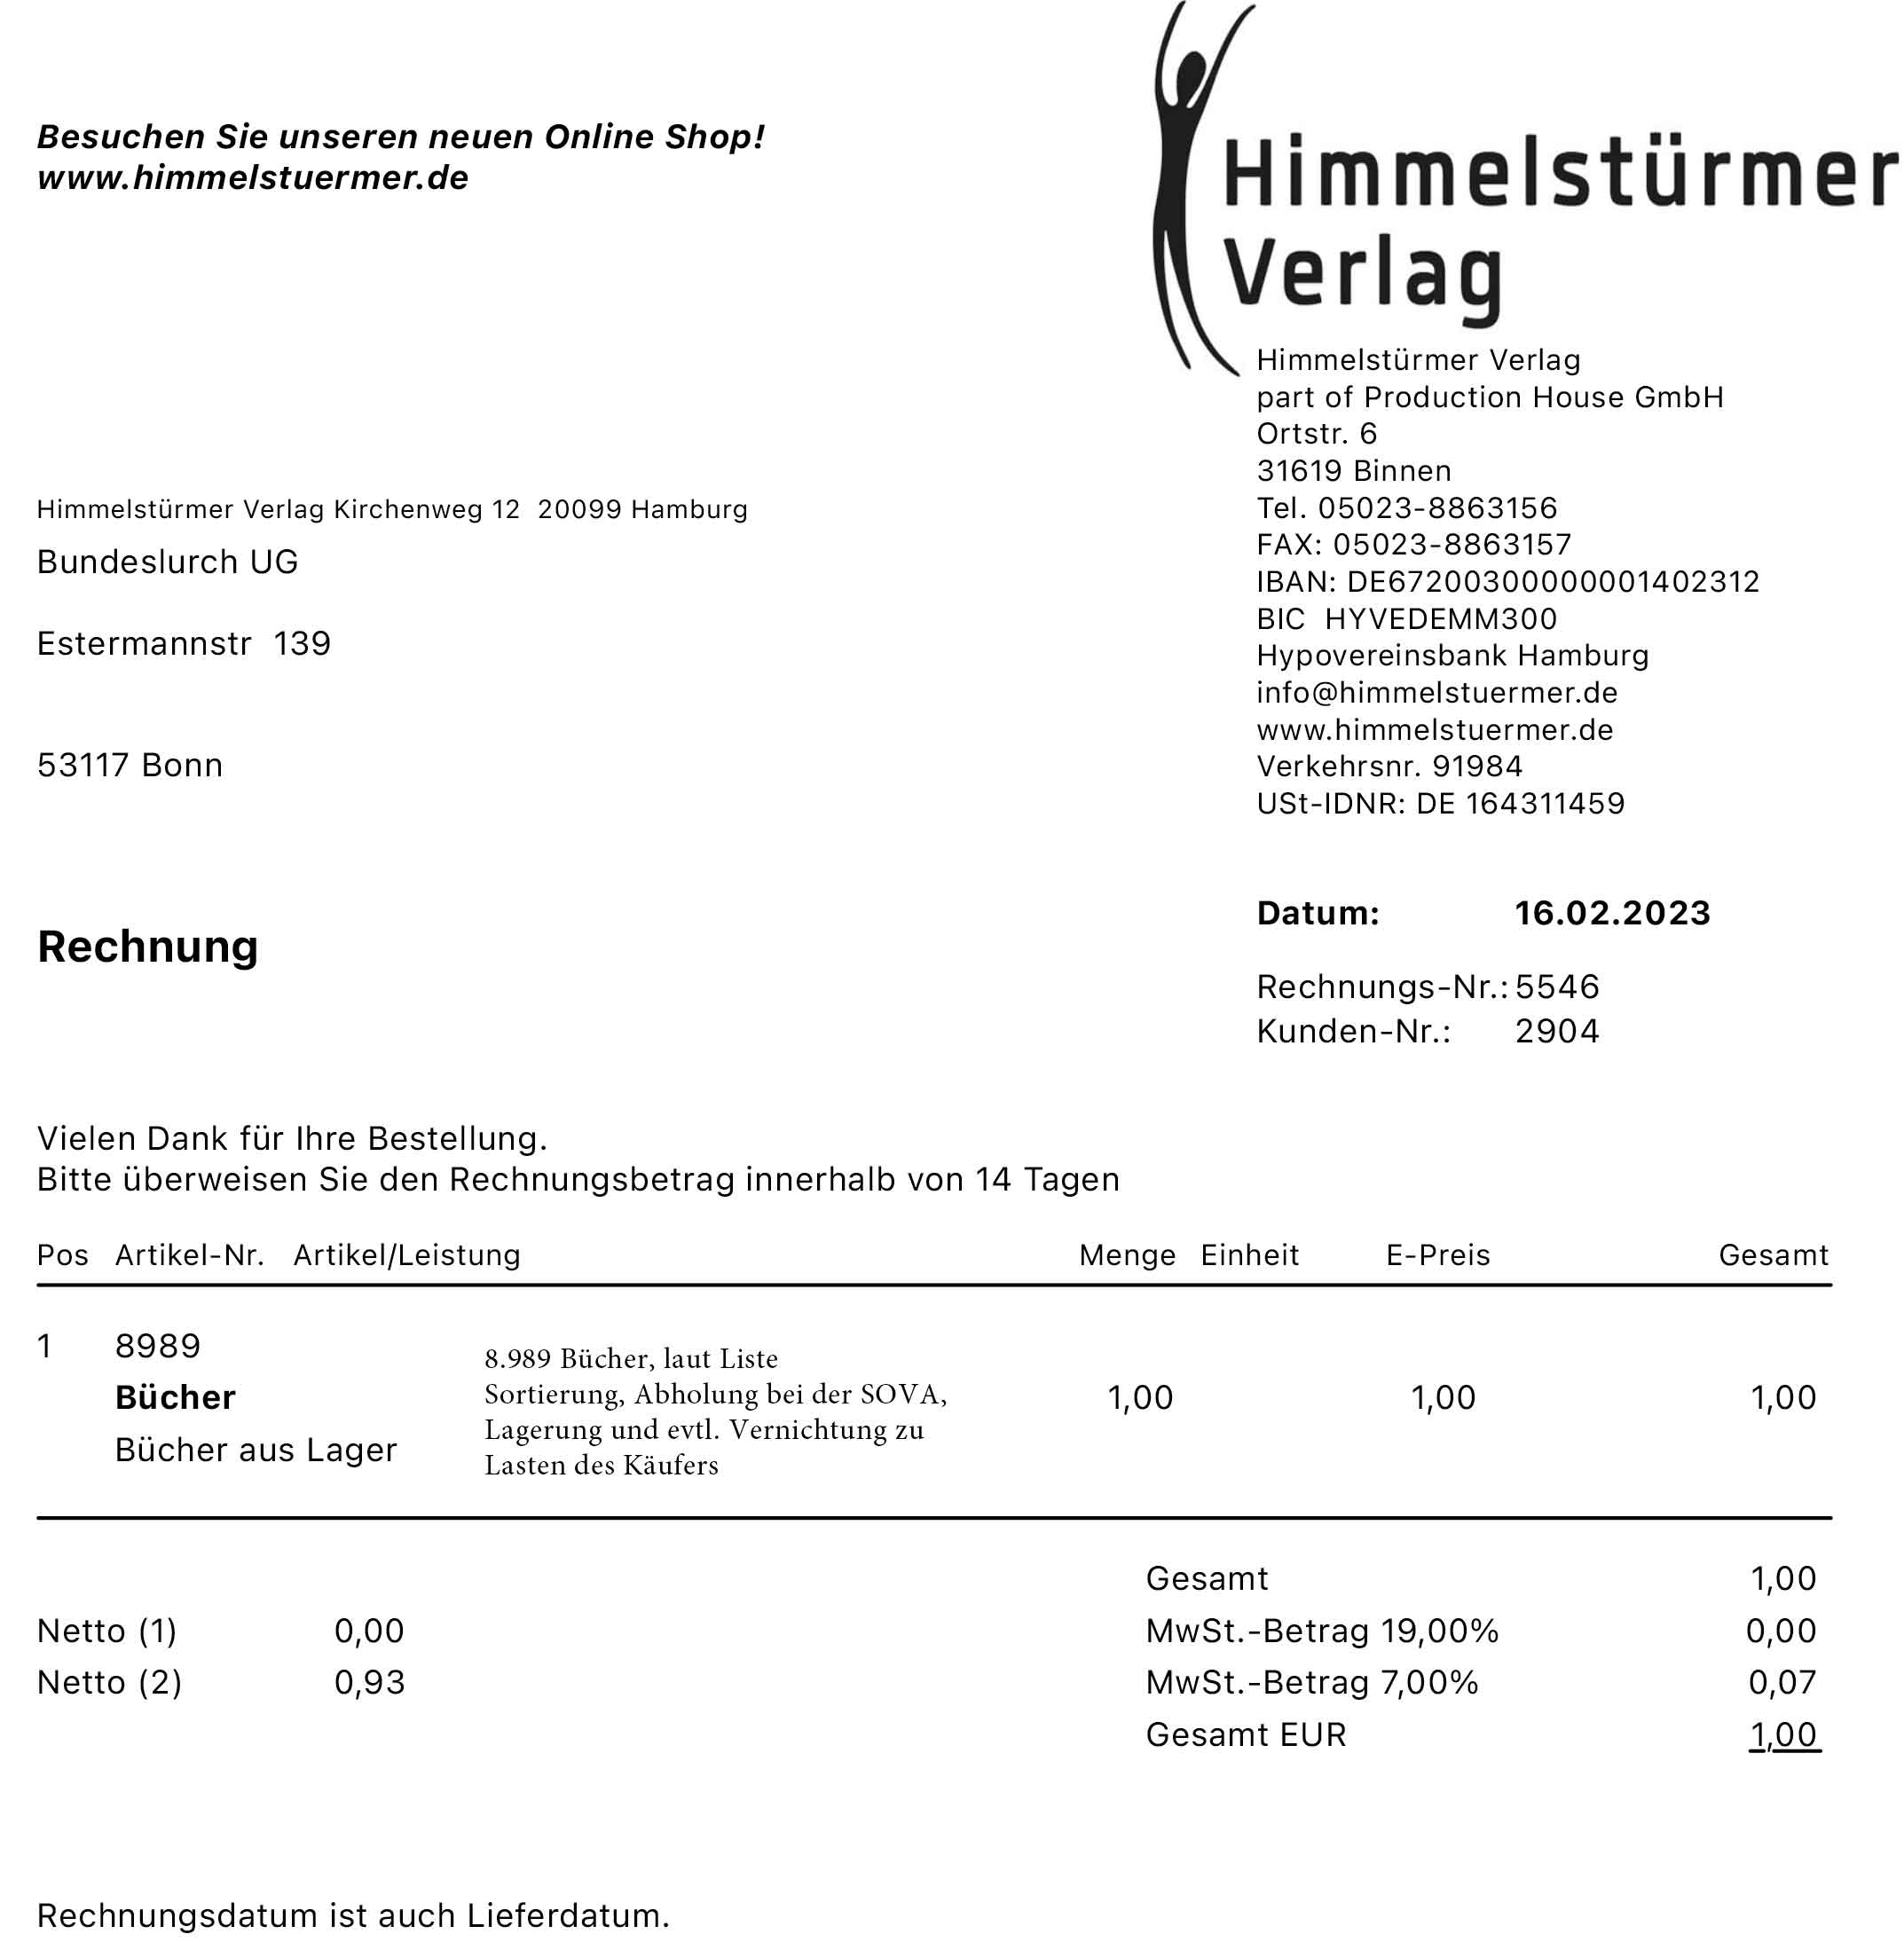 Aktion Sergej K.: Der Himmelstürmer Verlag spendet rund 9.000 Bücher